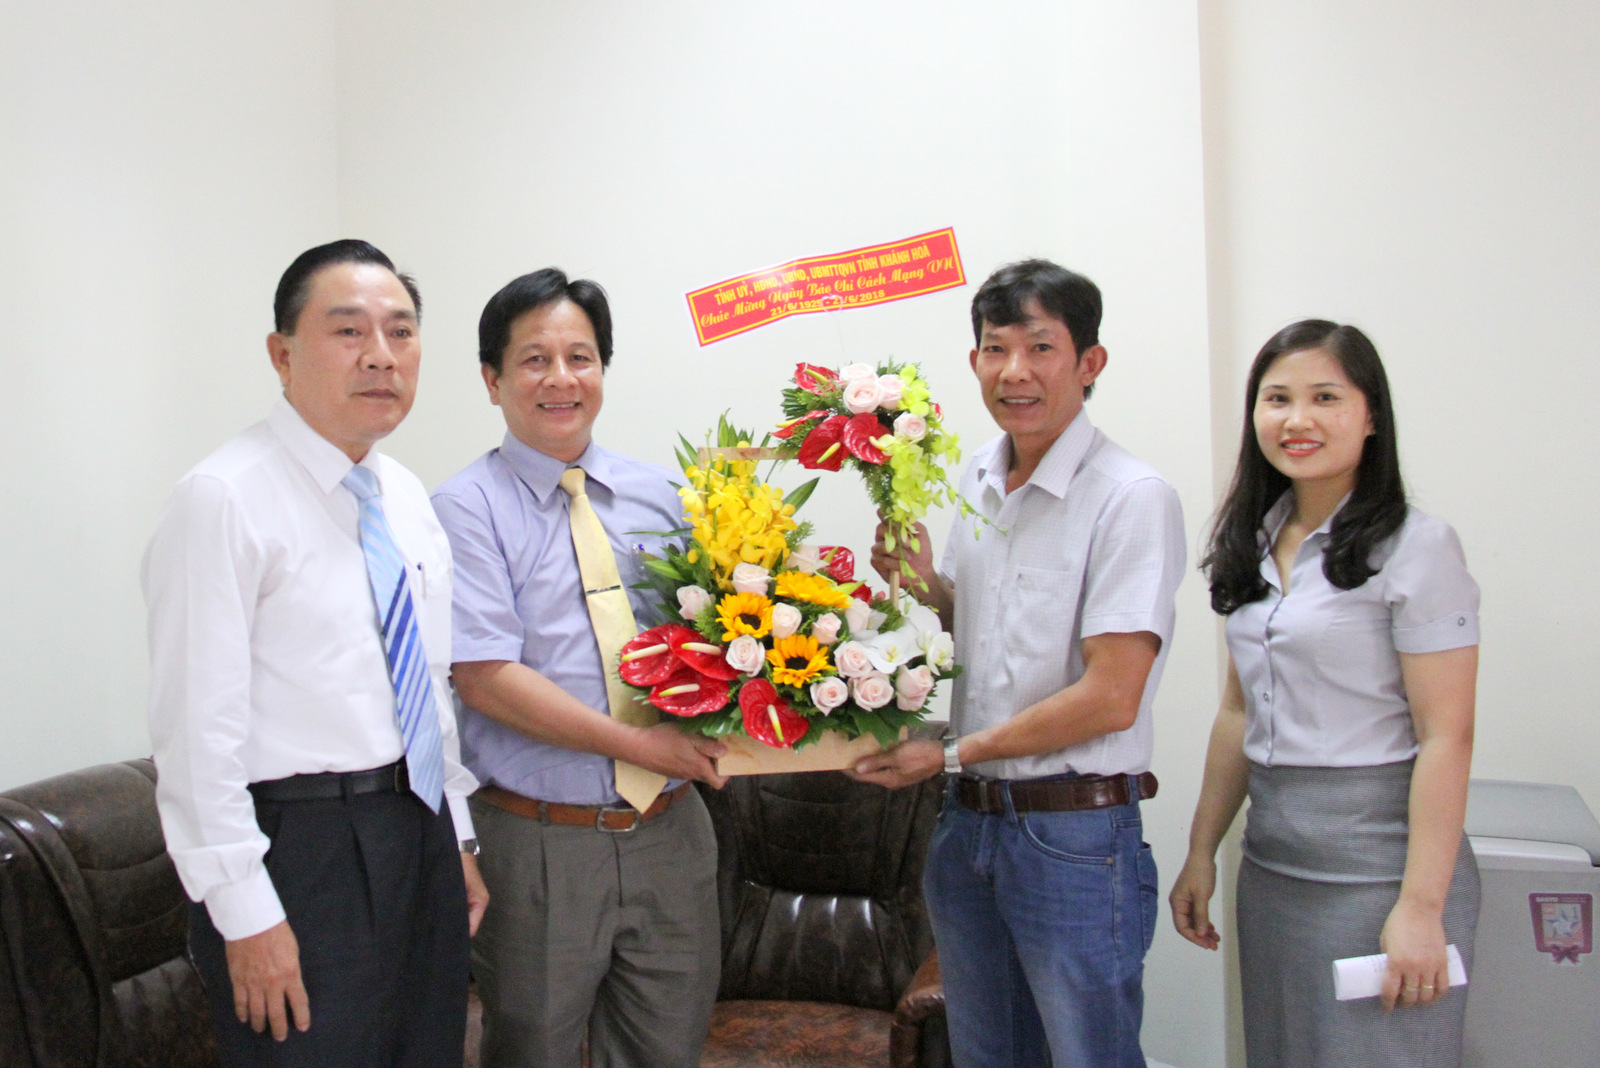 Ông Hồ Văn Mừng tặng hoa chúc mừng tập thể Cơ quan thường trú Thông tấn xã Việt Nam tại Khánh Hòa